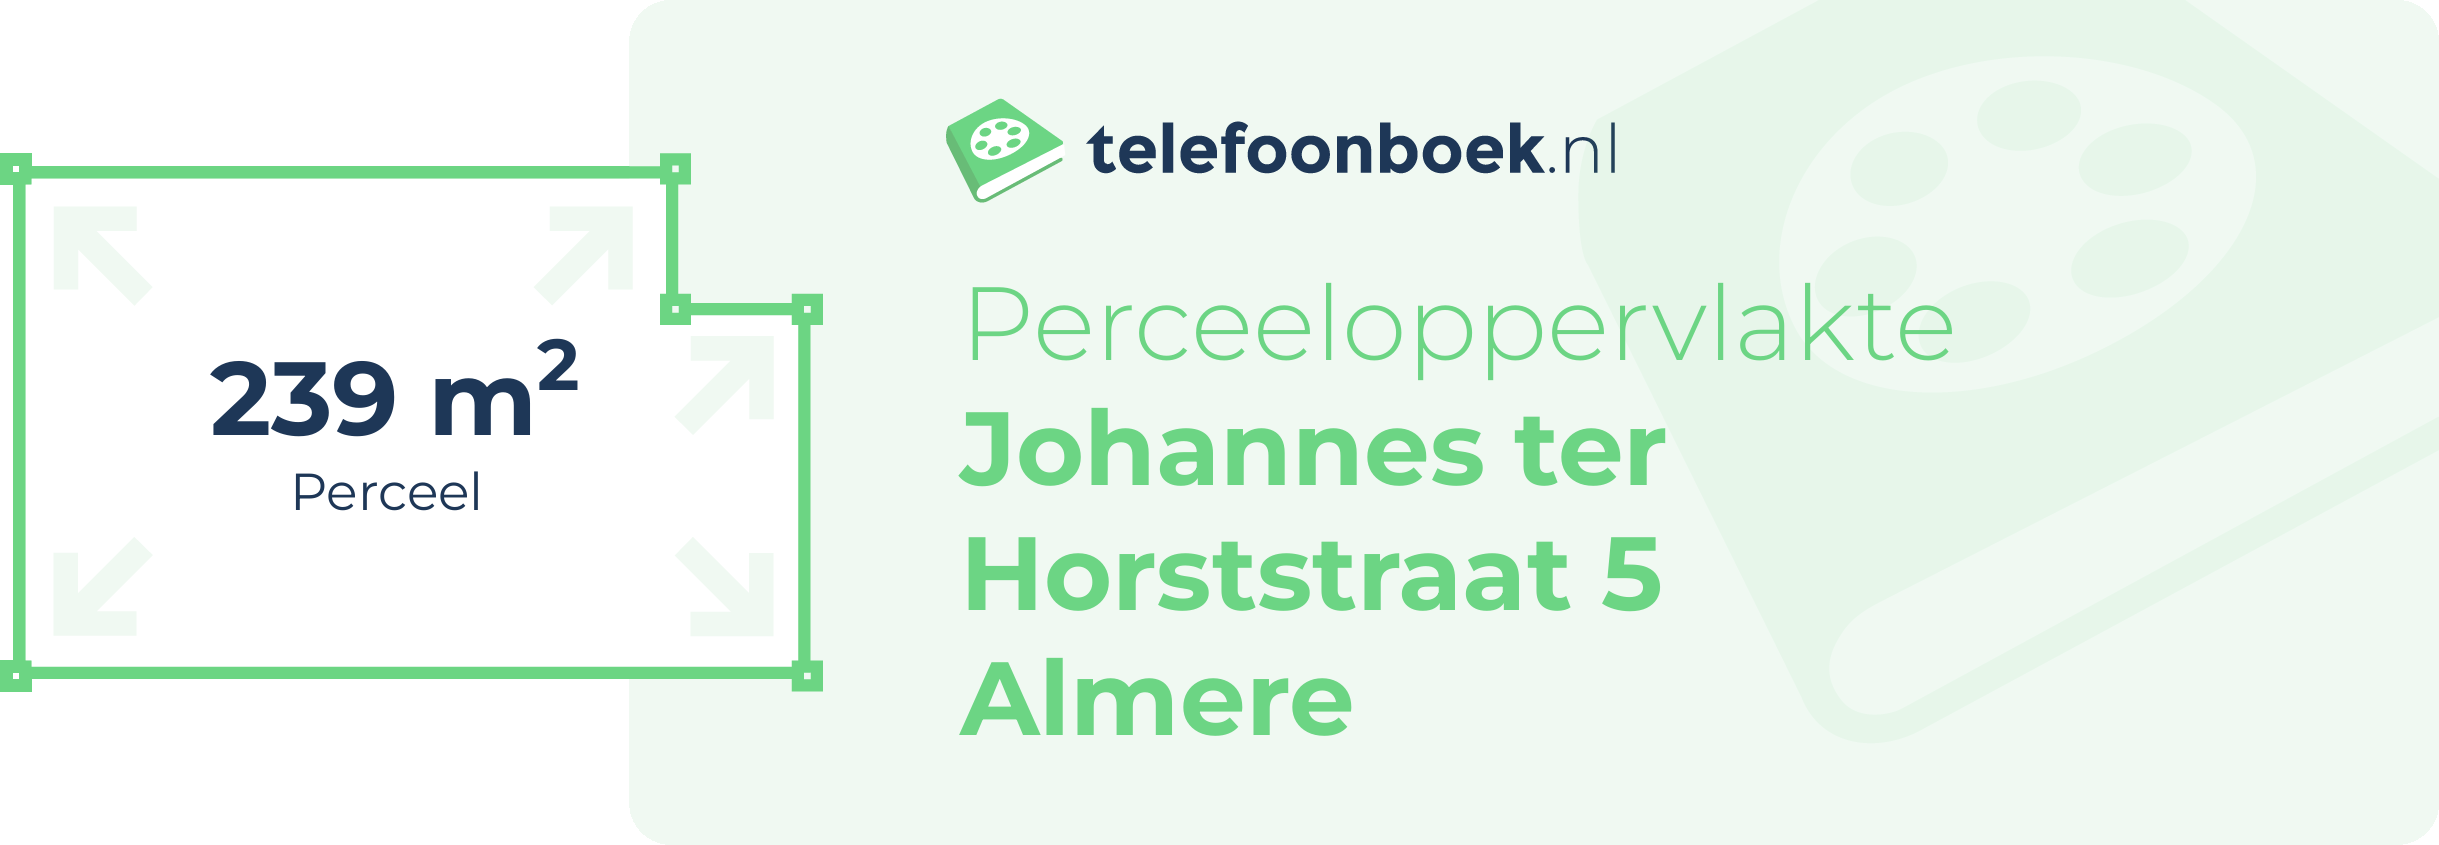 Perceeloppervlakte Johannes Ter Horststraat 5 Almere